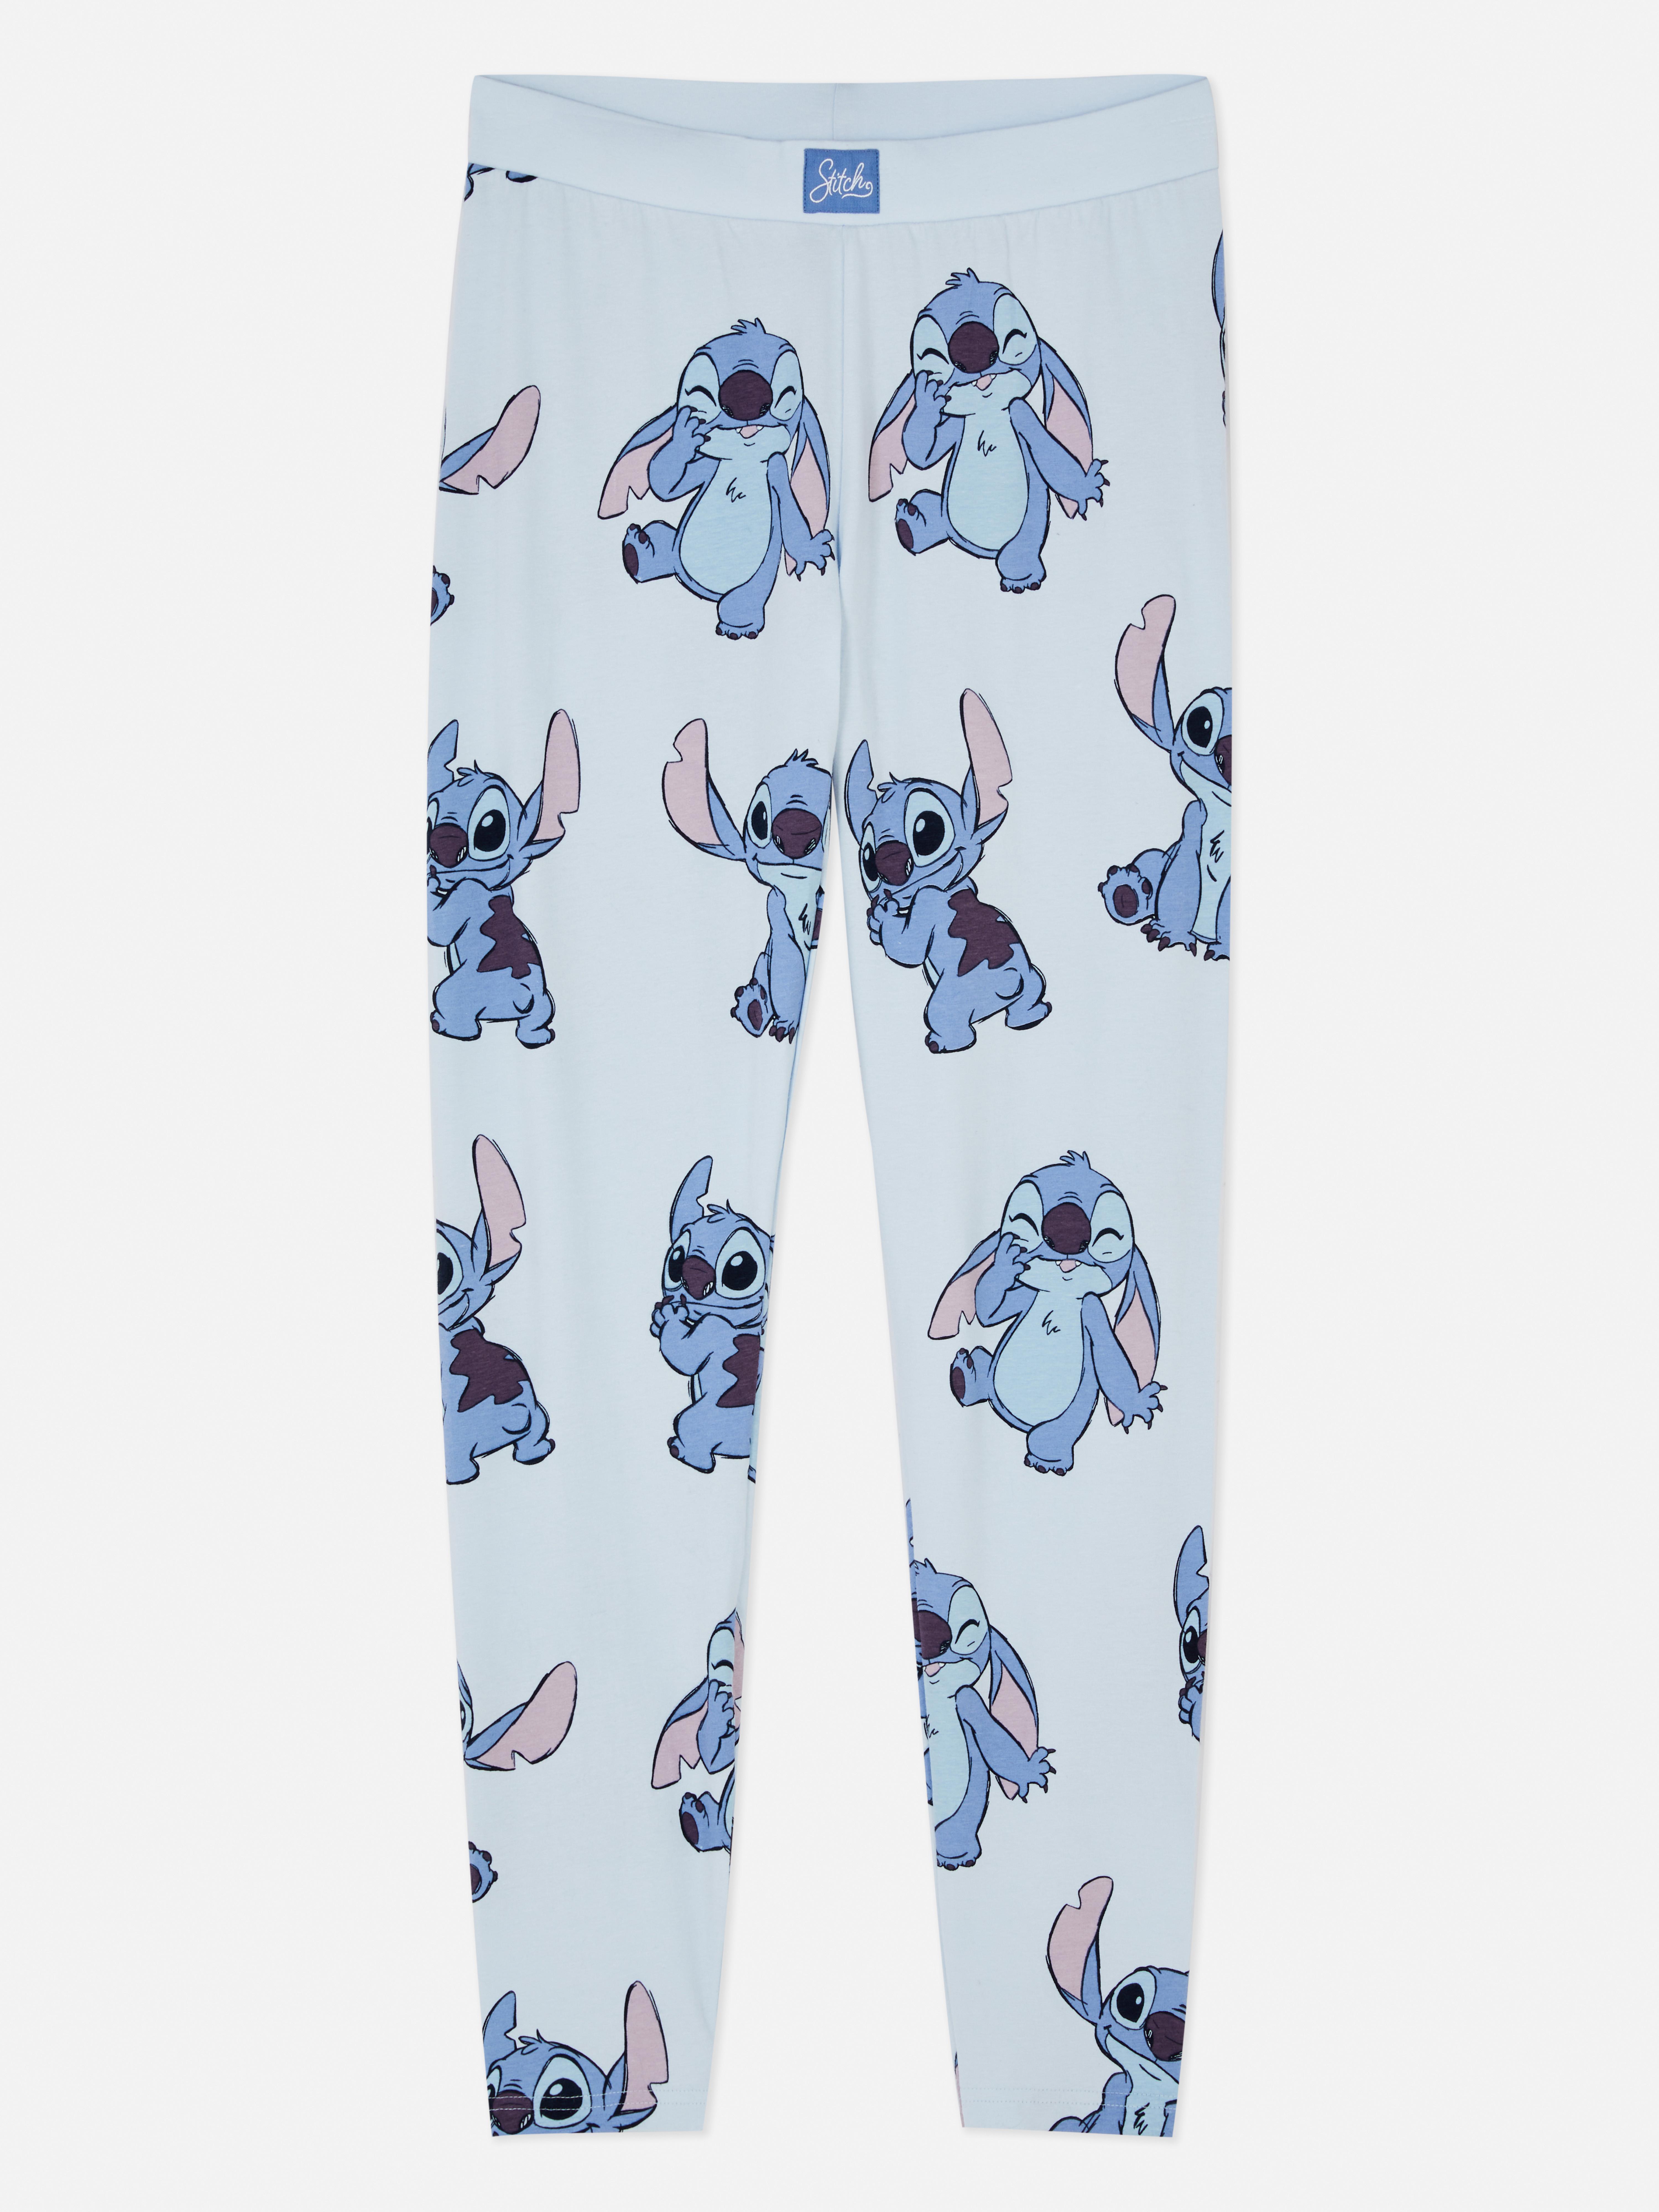 Disney's Characters Originals Printed Pyjama Leggings